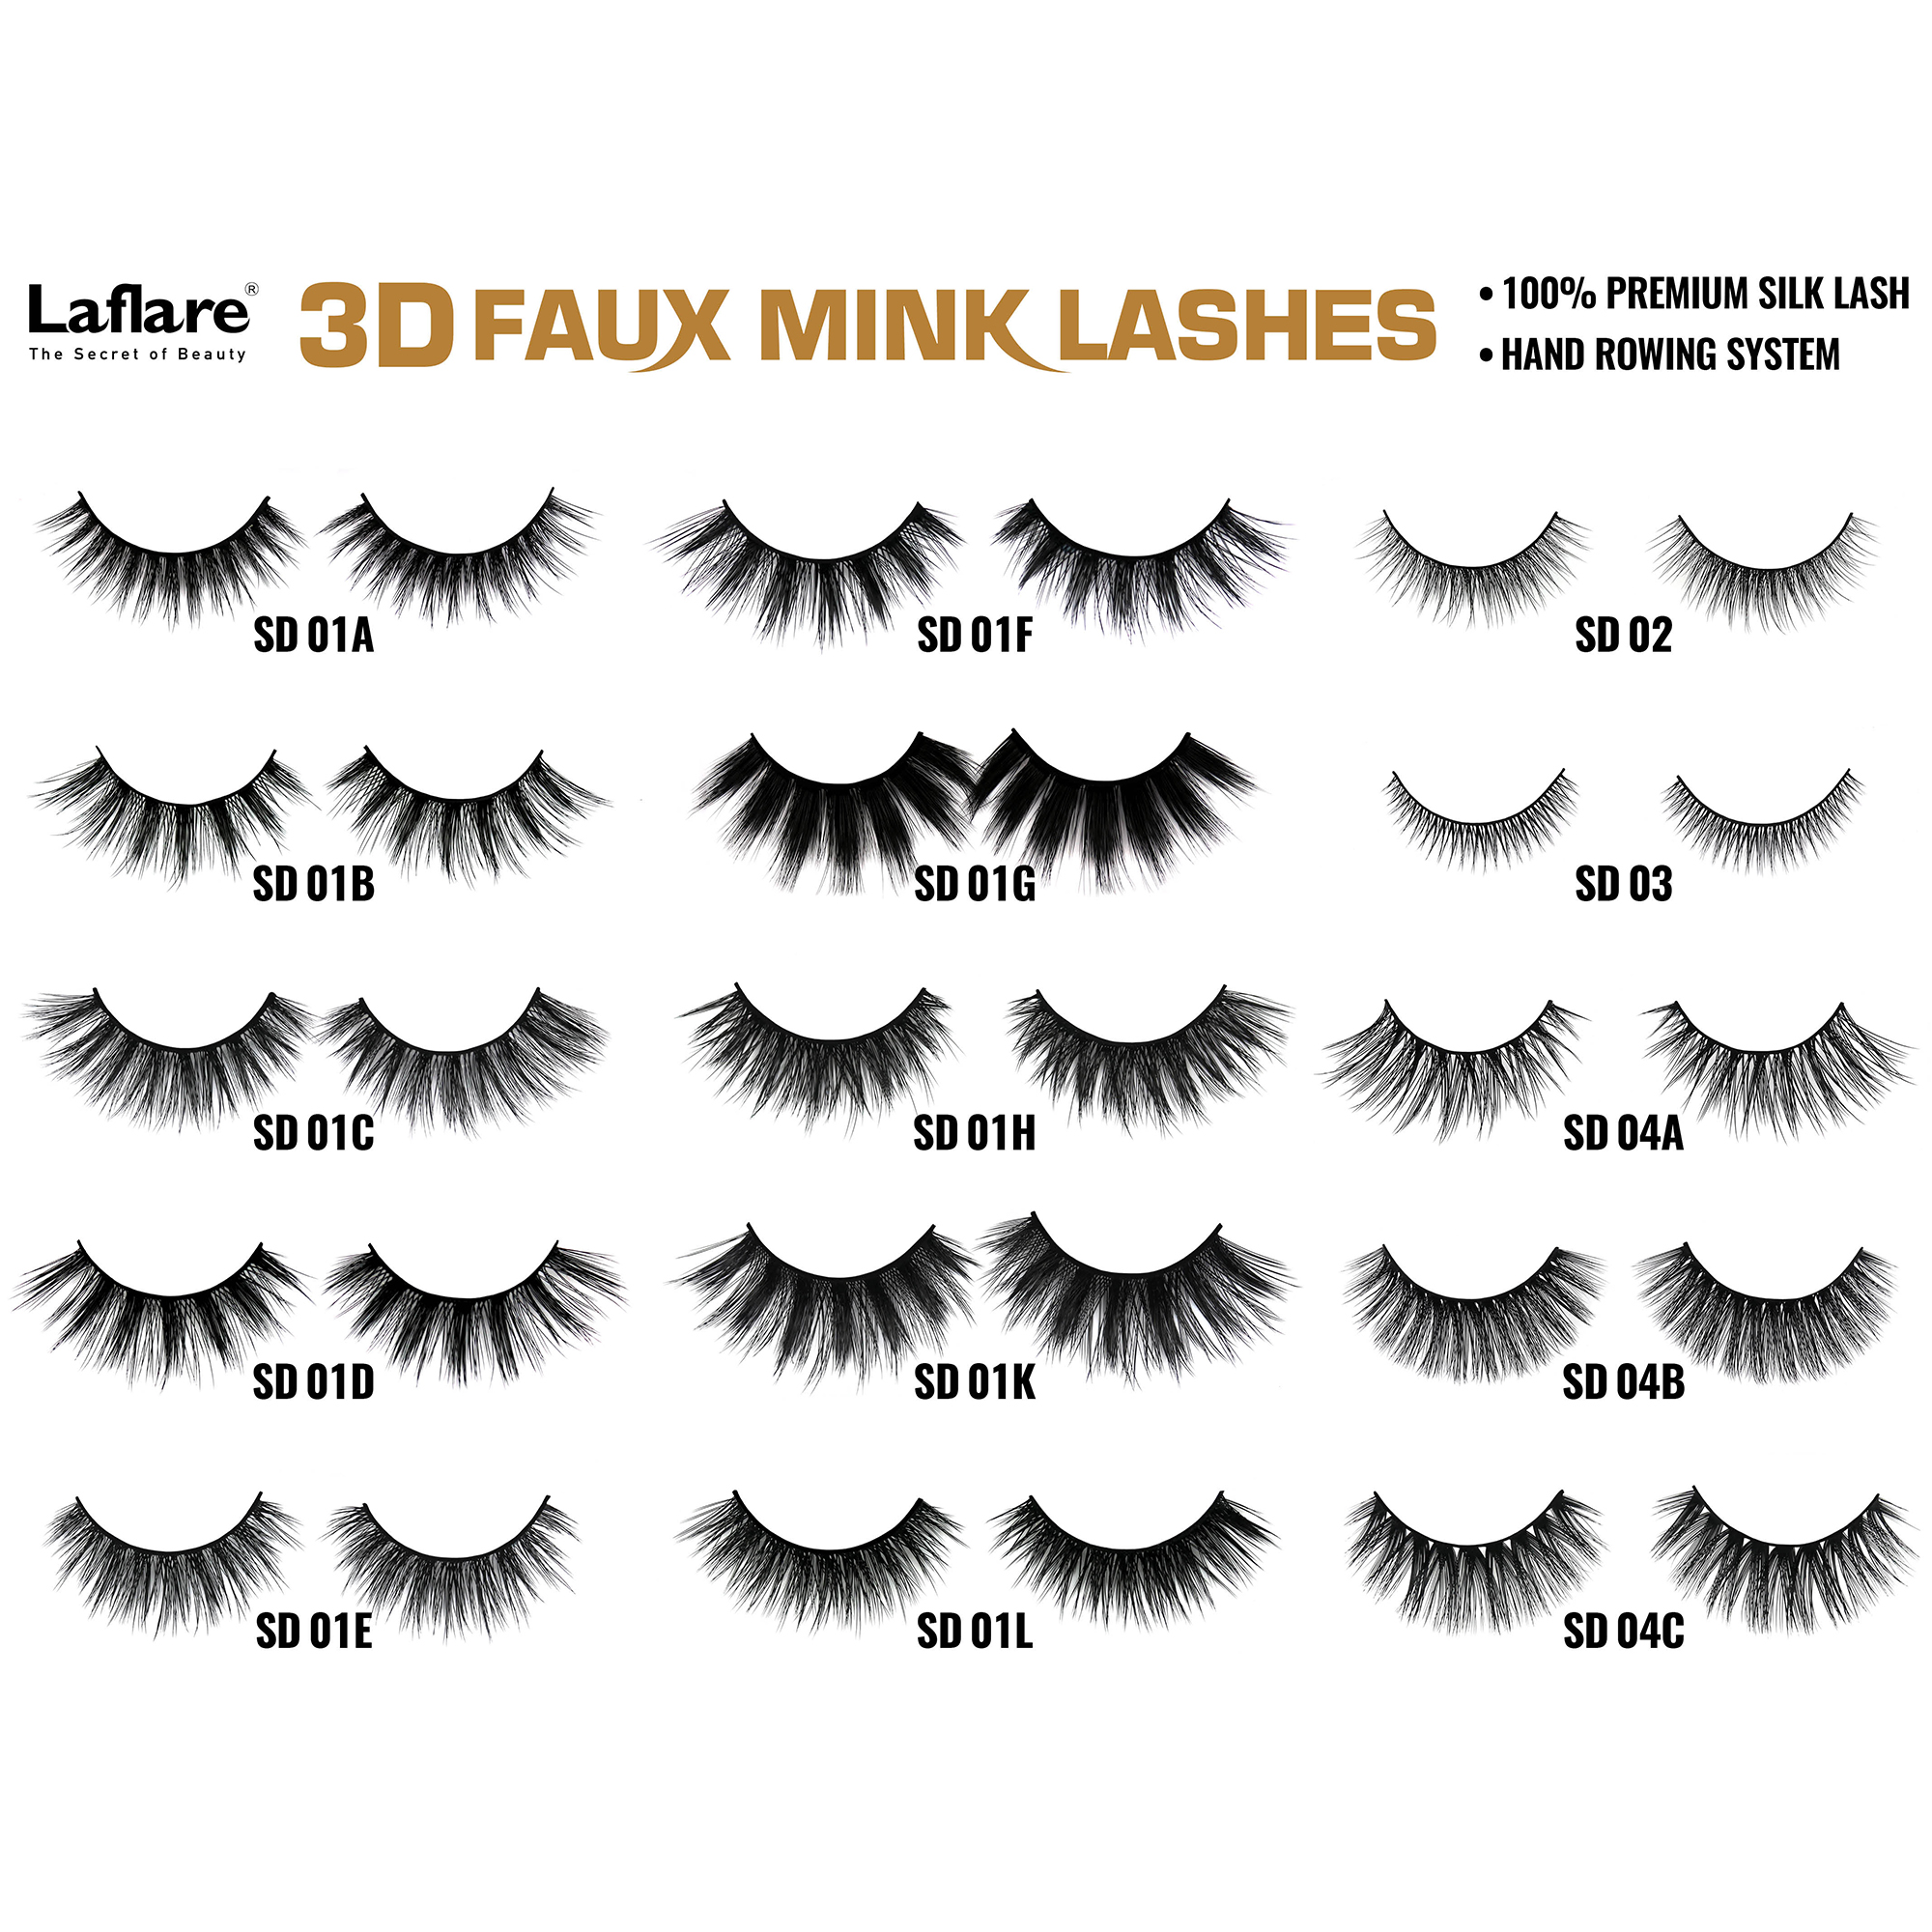 LAFLARE 3d Faux Mink Lashes - SD04B